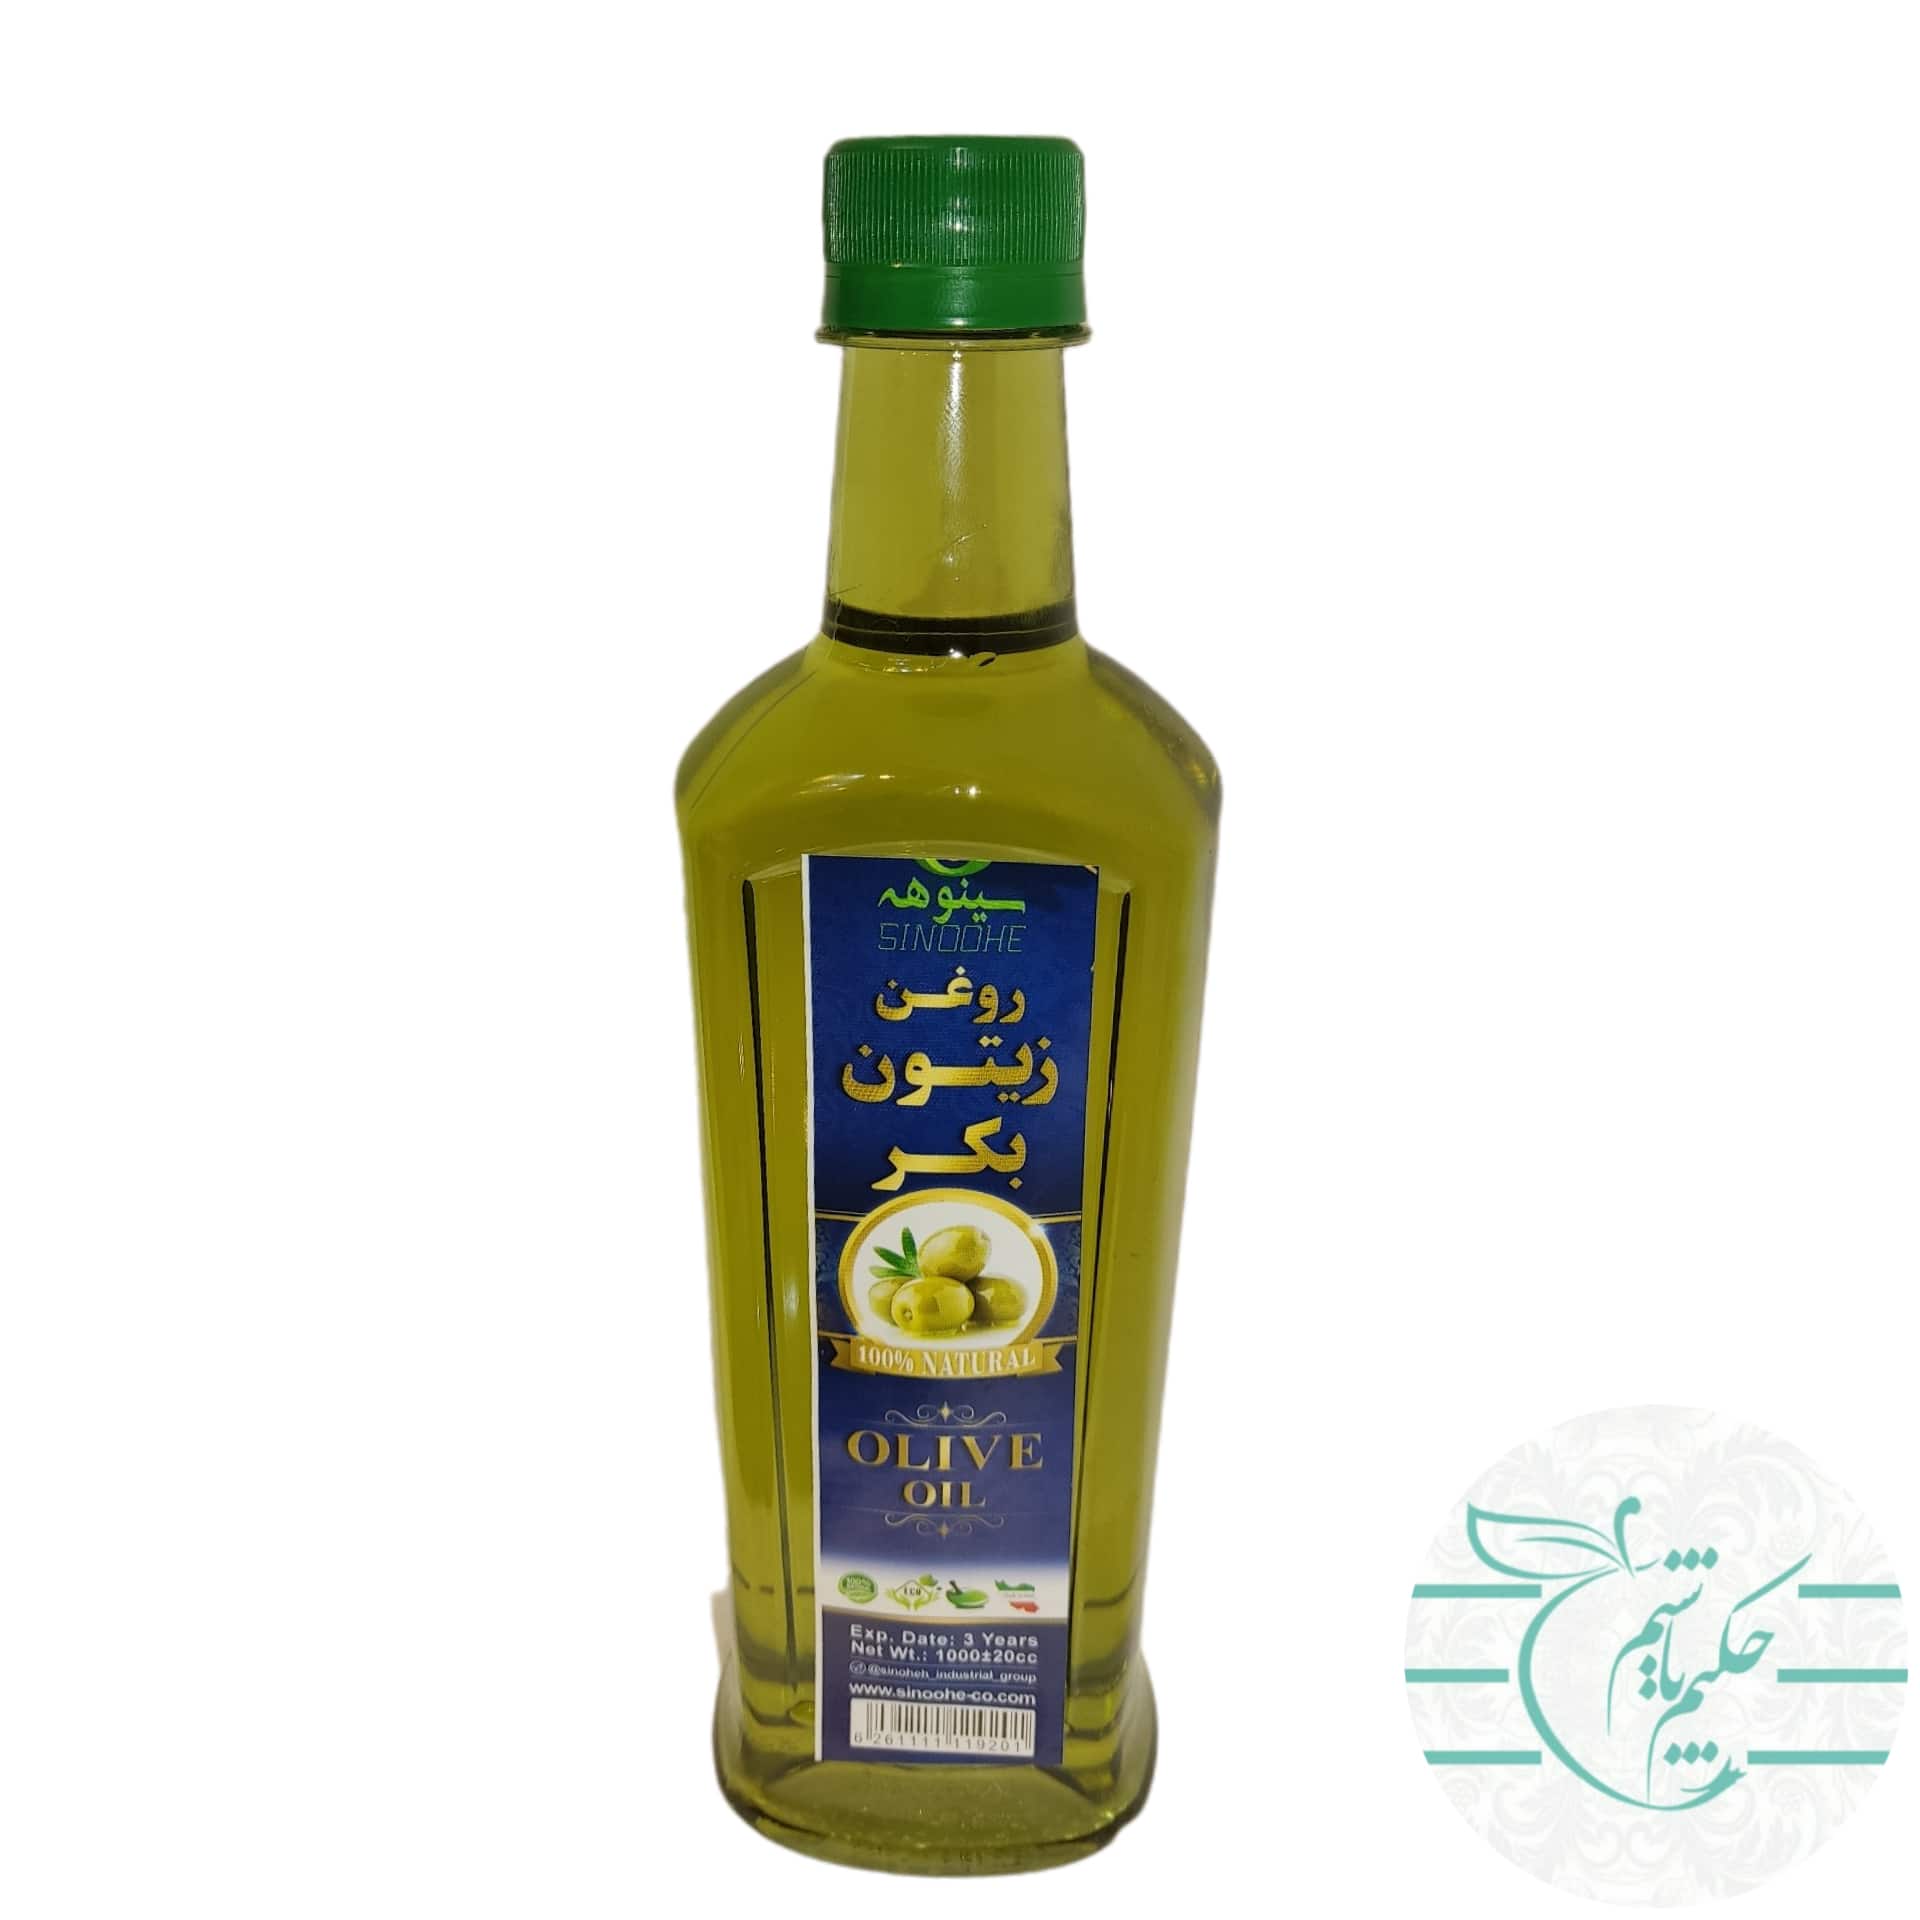 Half a liter of olive oil min